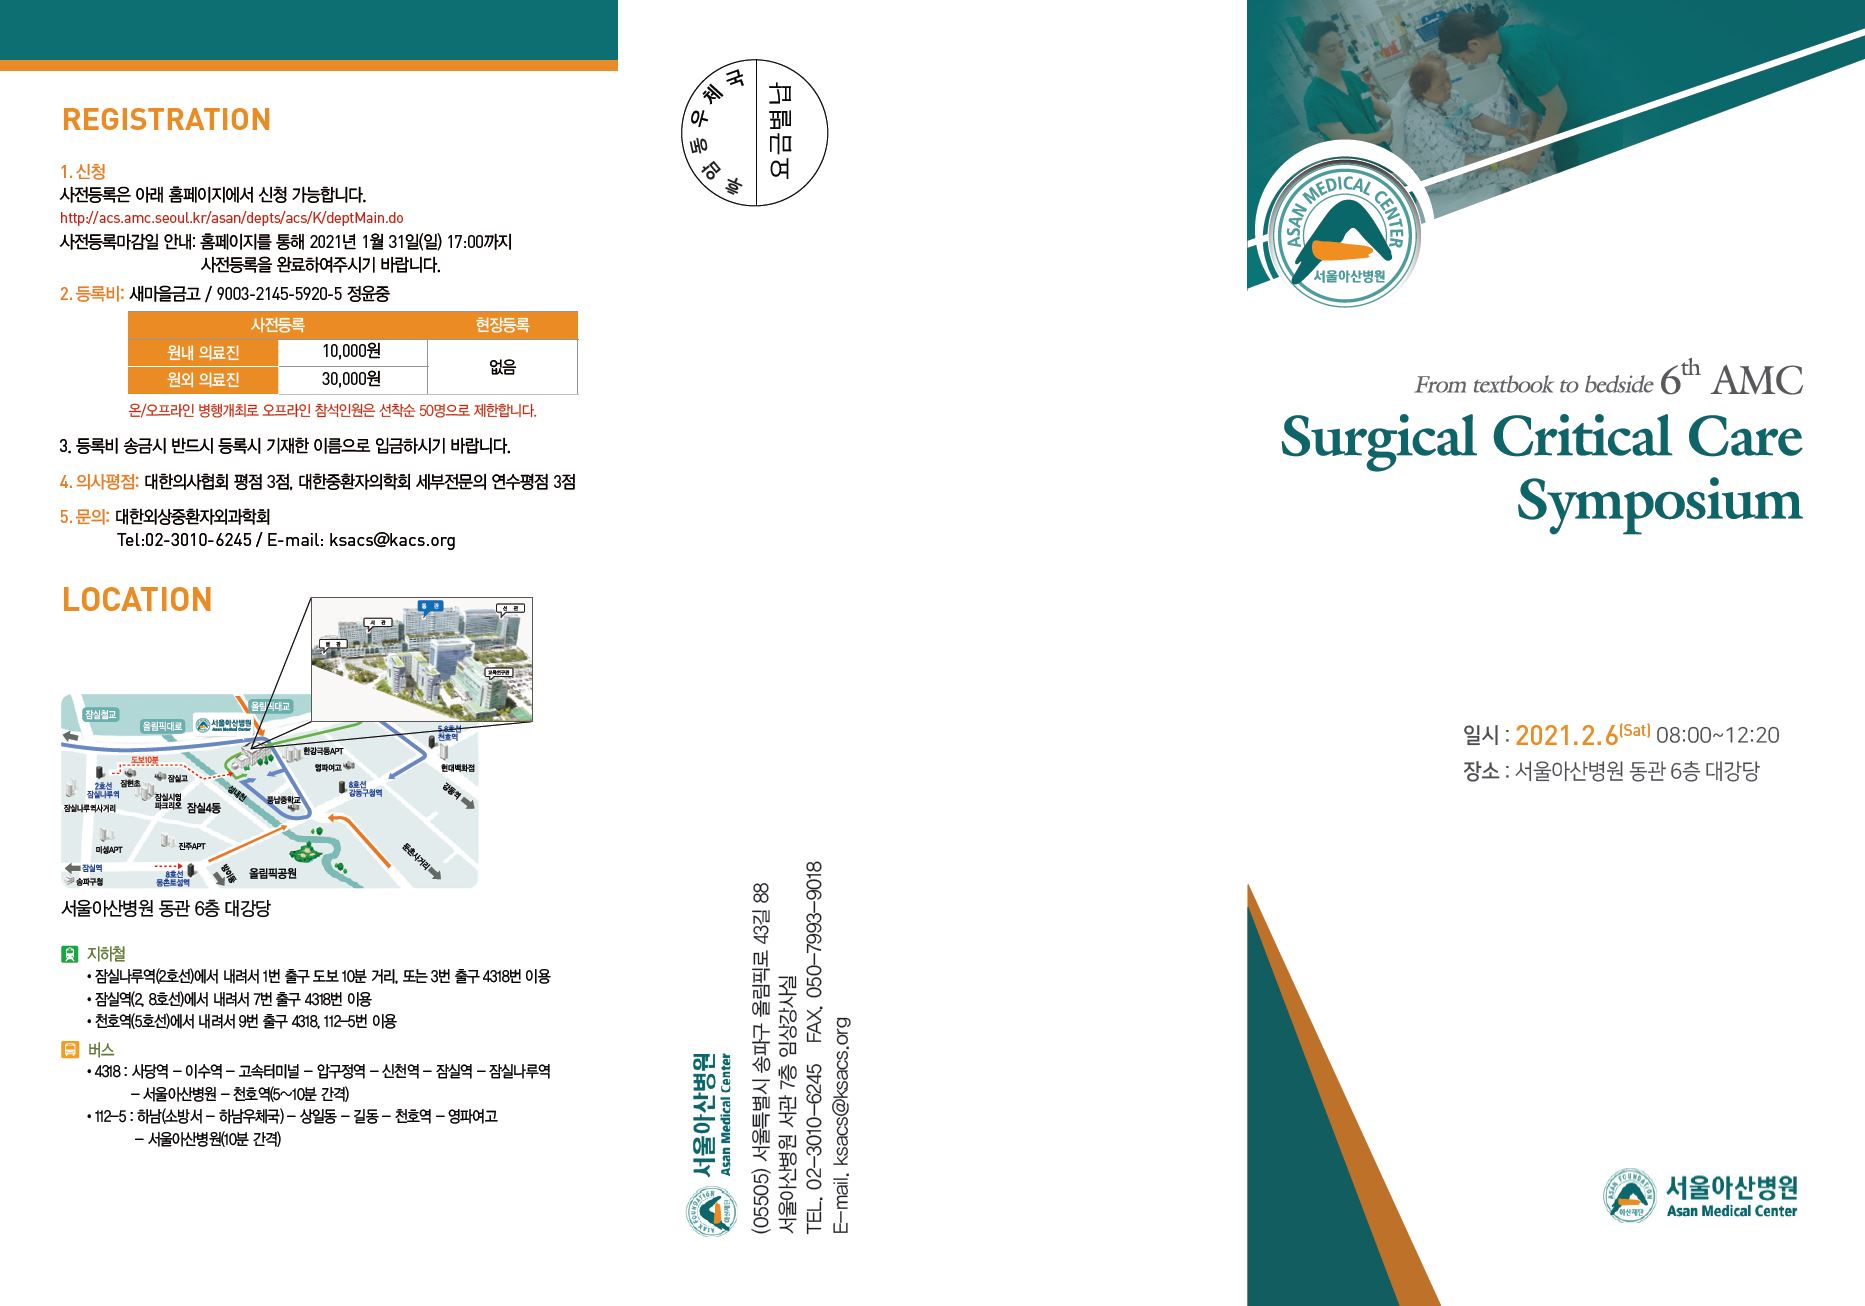 AMC 6th Surgical Critical Care Symposium